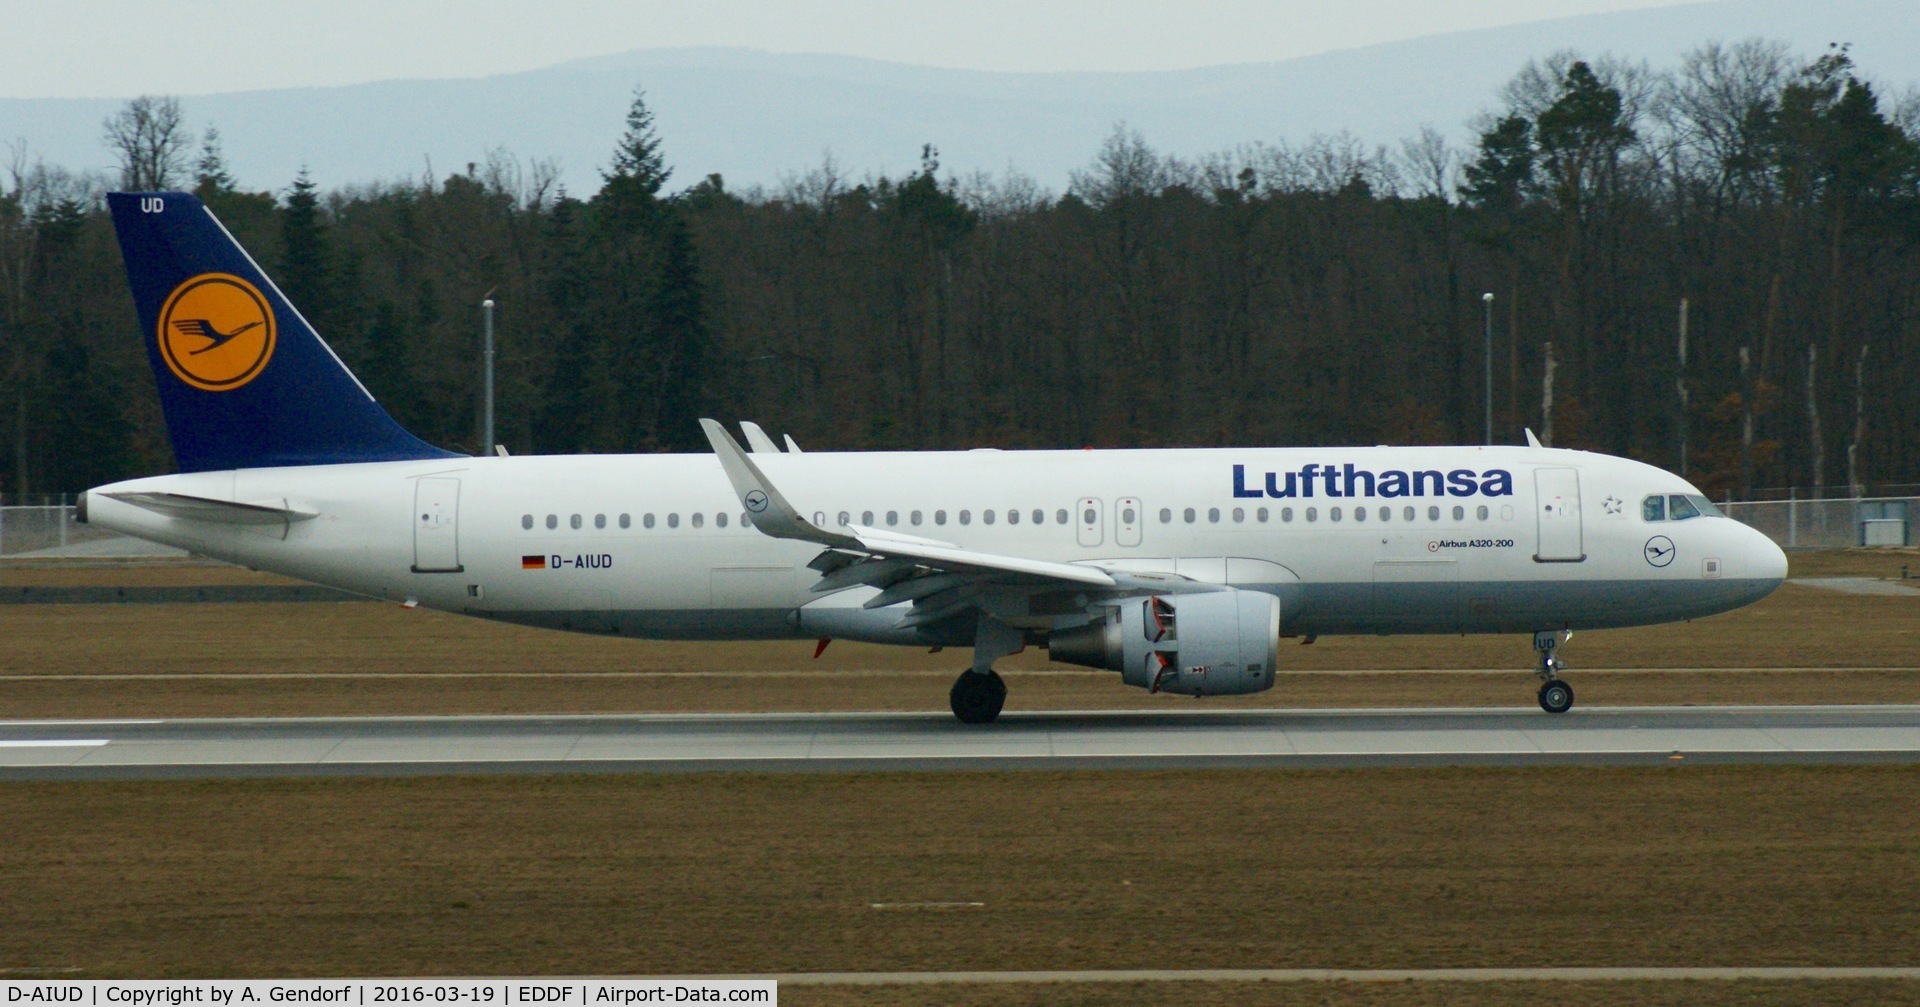 D-AIUD, 2014 Airbus A320-214 C/N 6033, Lufthansa, is here taxiing at Frankfurt Rhein/Main(EDDF)